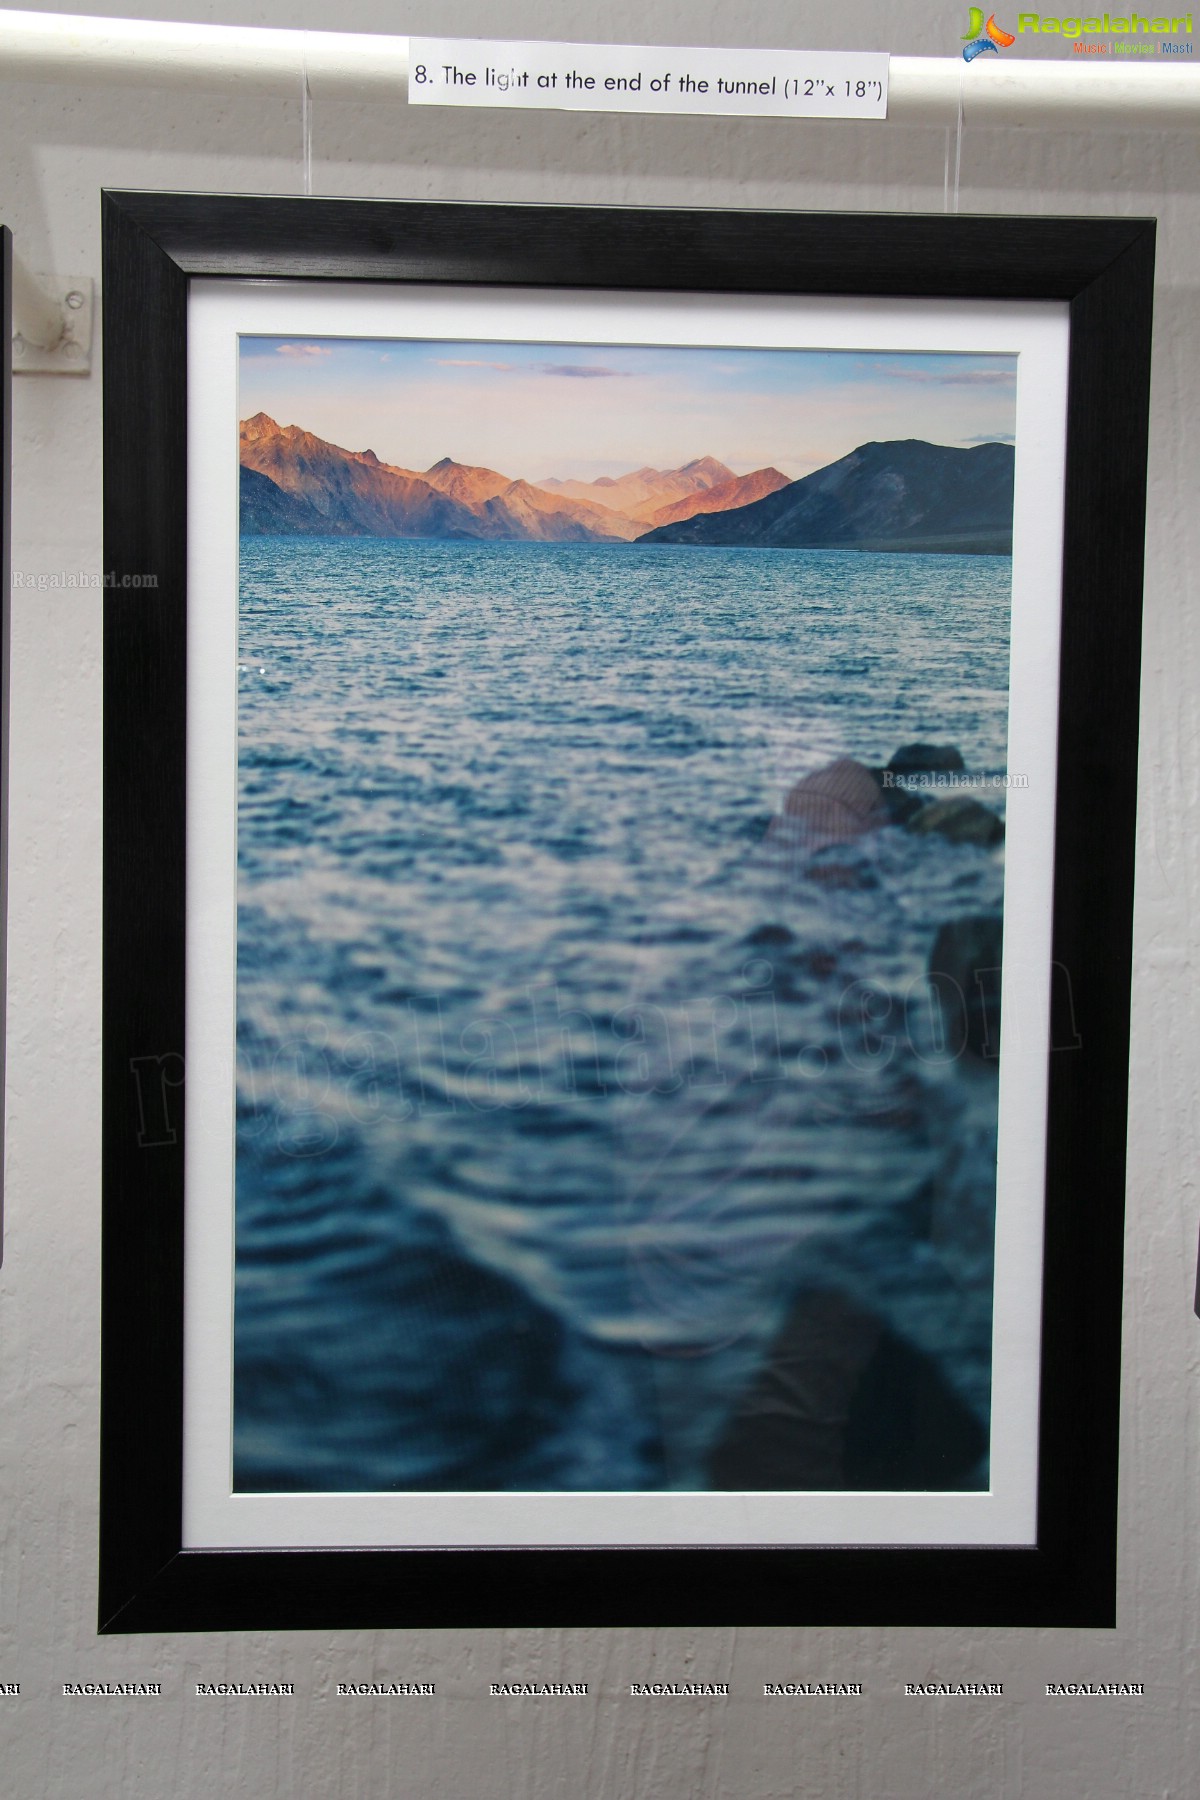 'Landscapes of Ladakh' - Kishor Krishnamoorthi Photography Exhibition